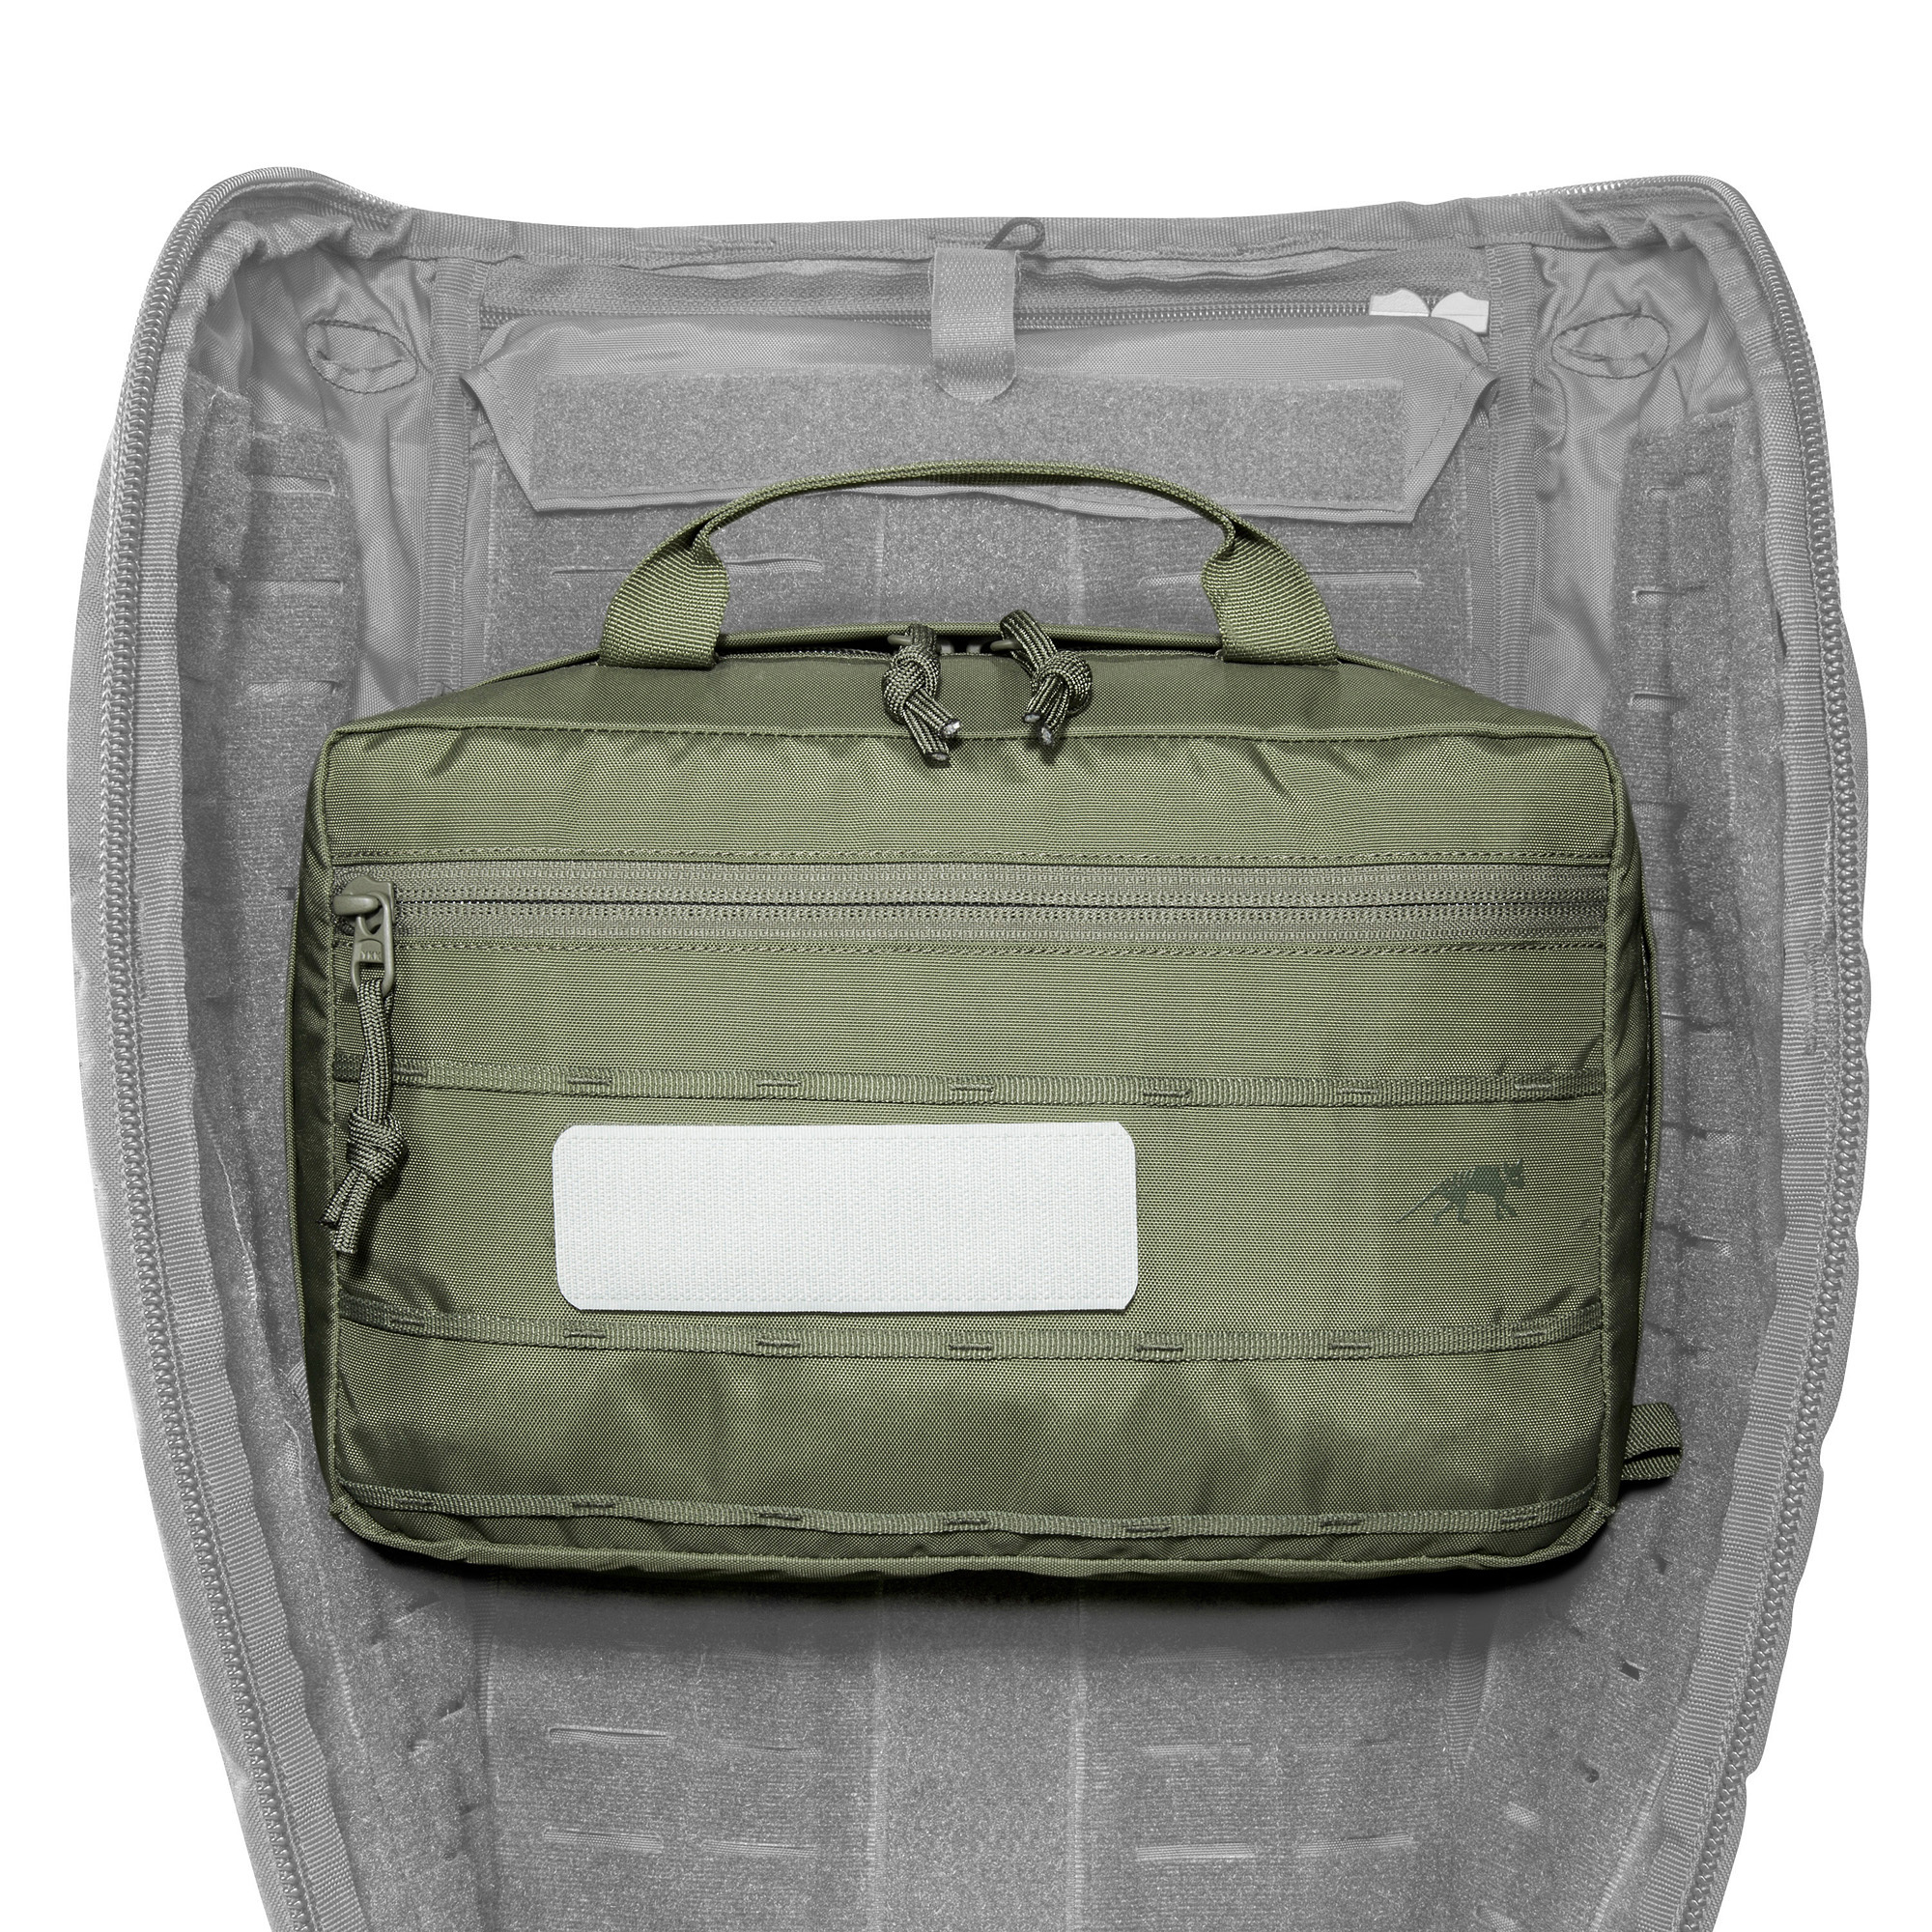 TT Multipurpose Pouch VL - Equipment Bag